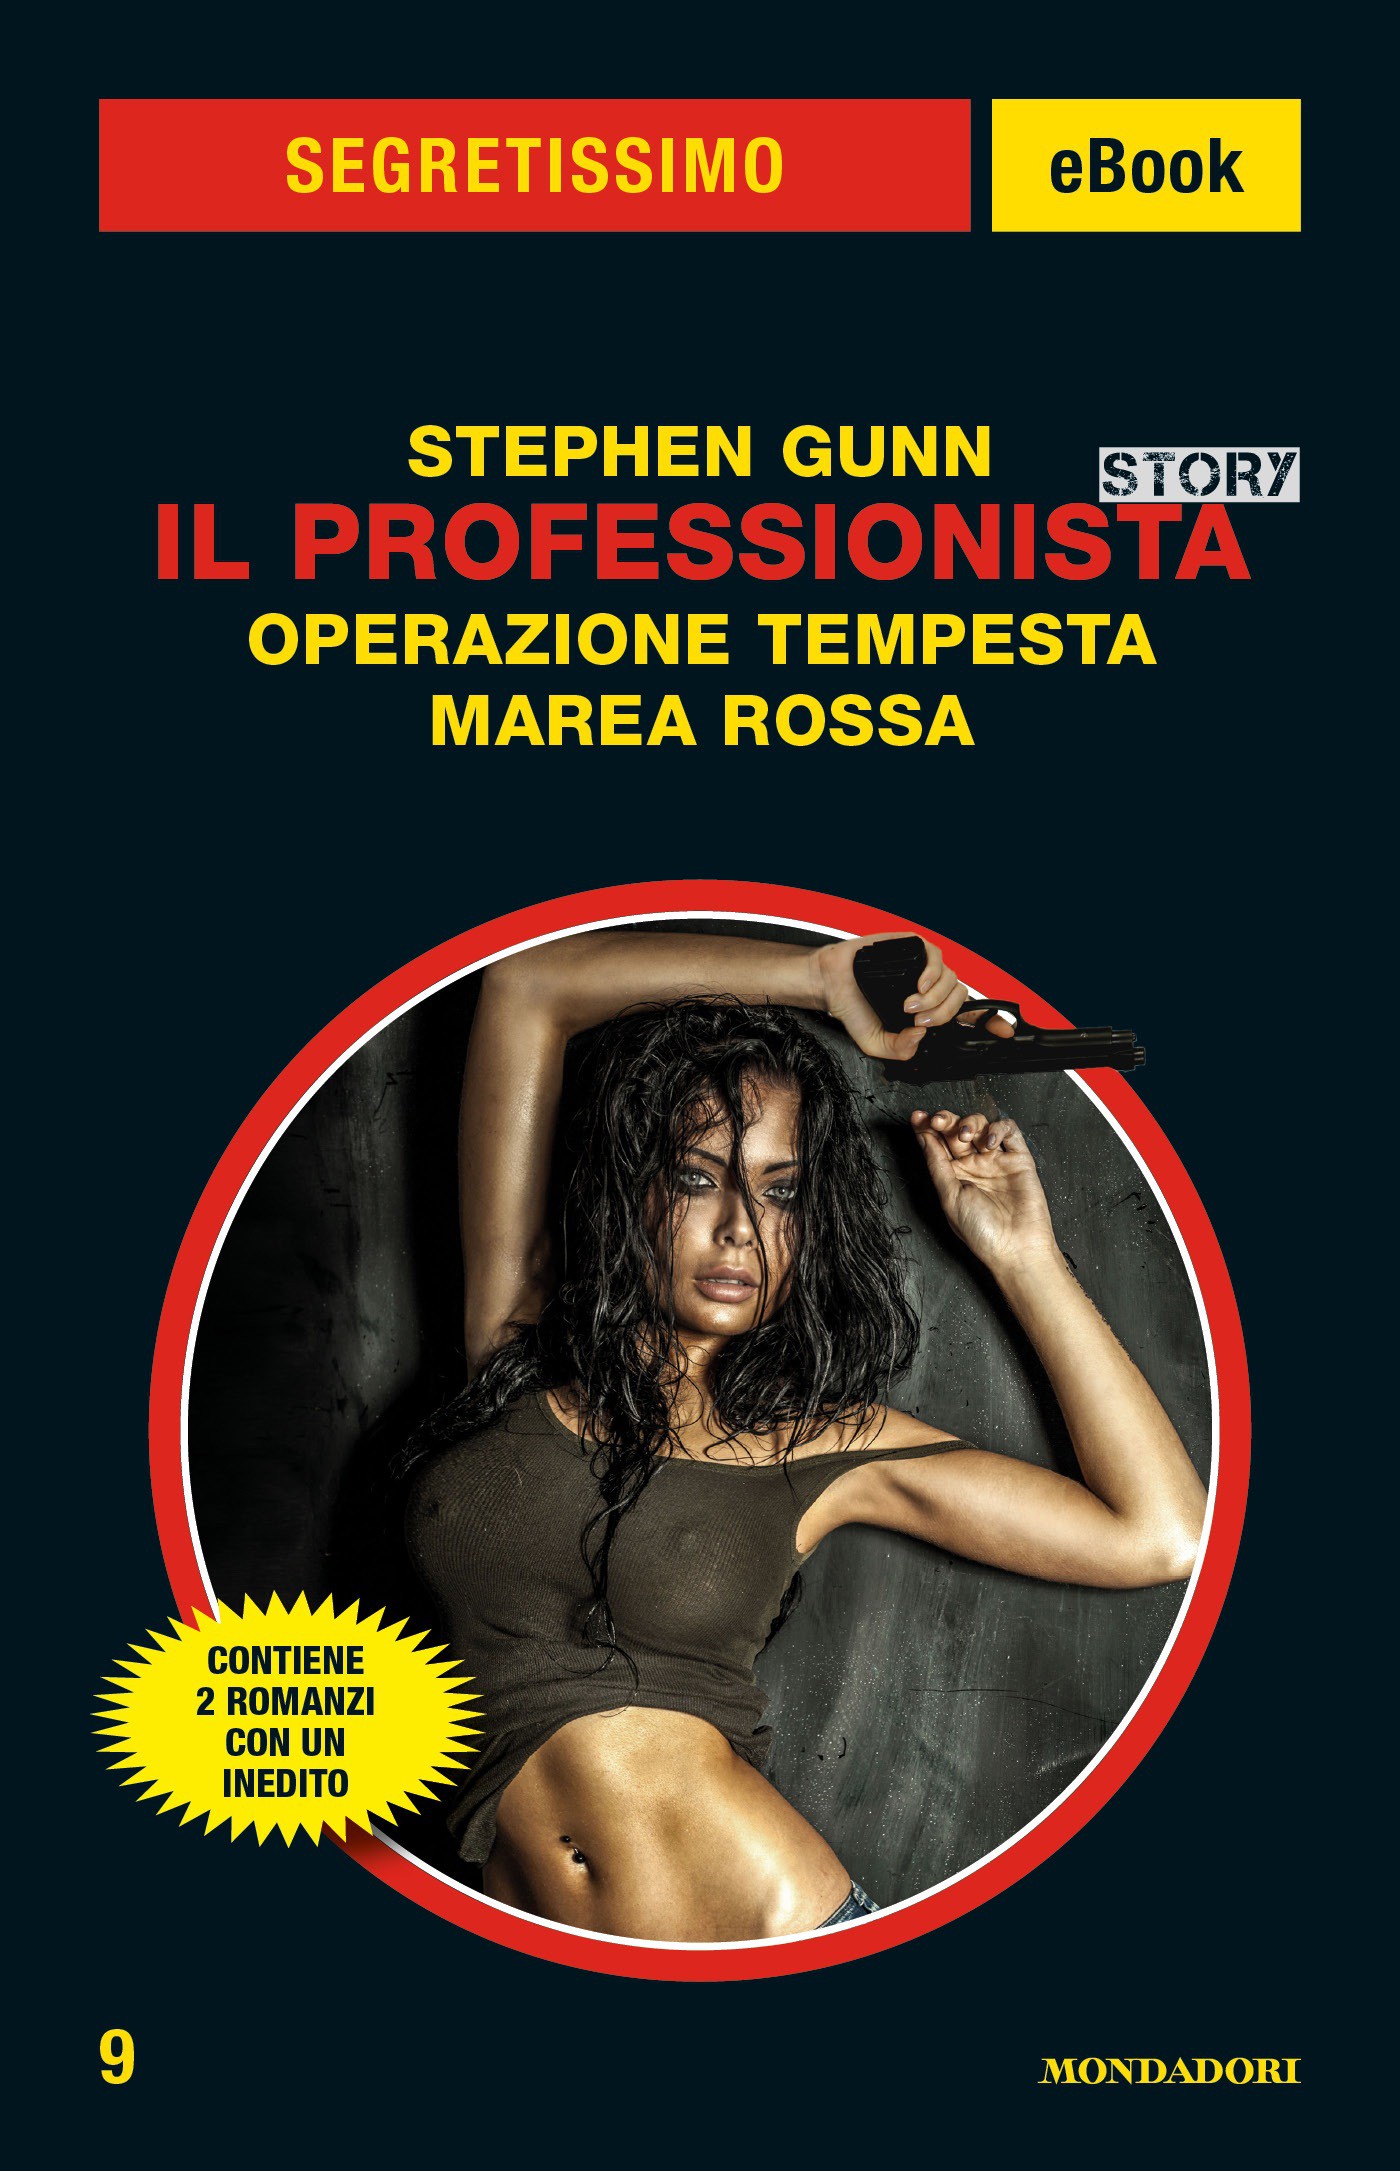 Il Professionista Story: Operazione Tempesta - Marea Rossa (Segretissimo) - Librerie.coop